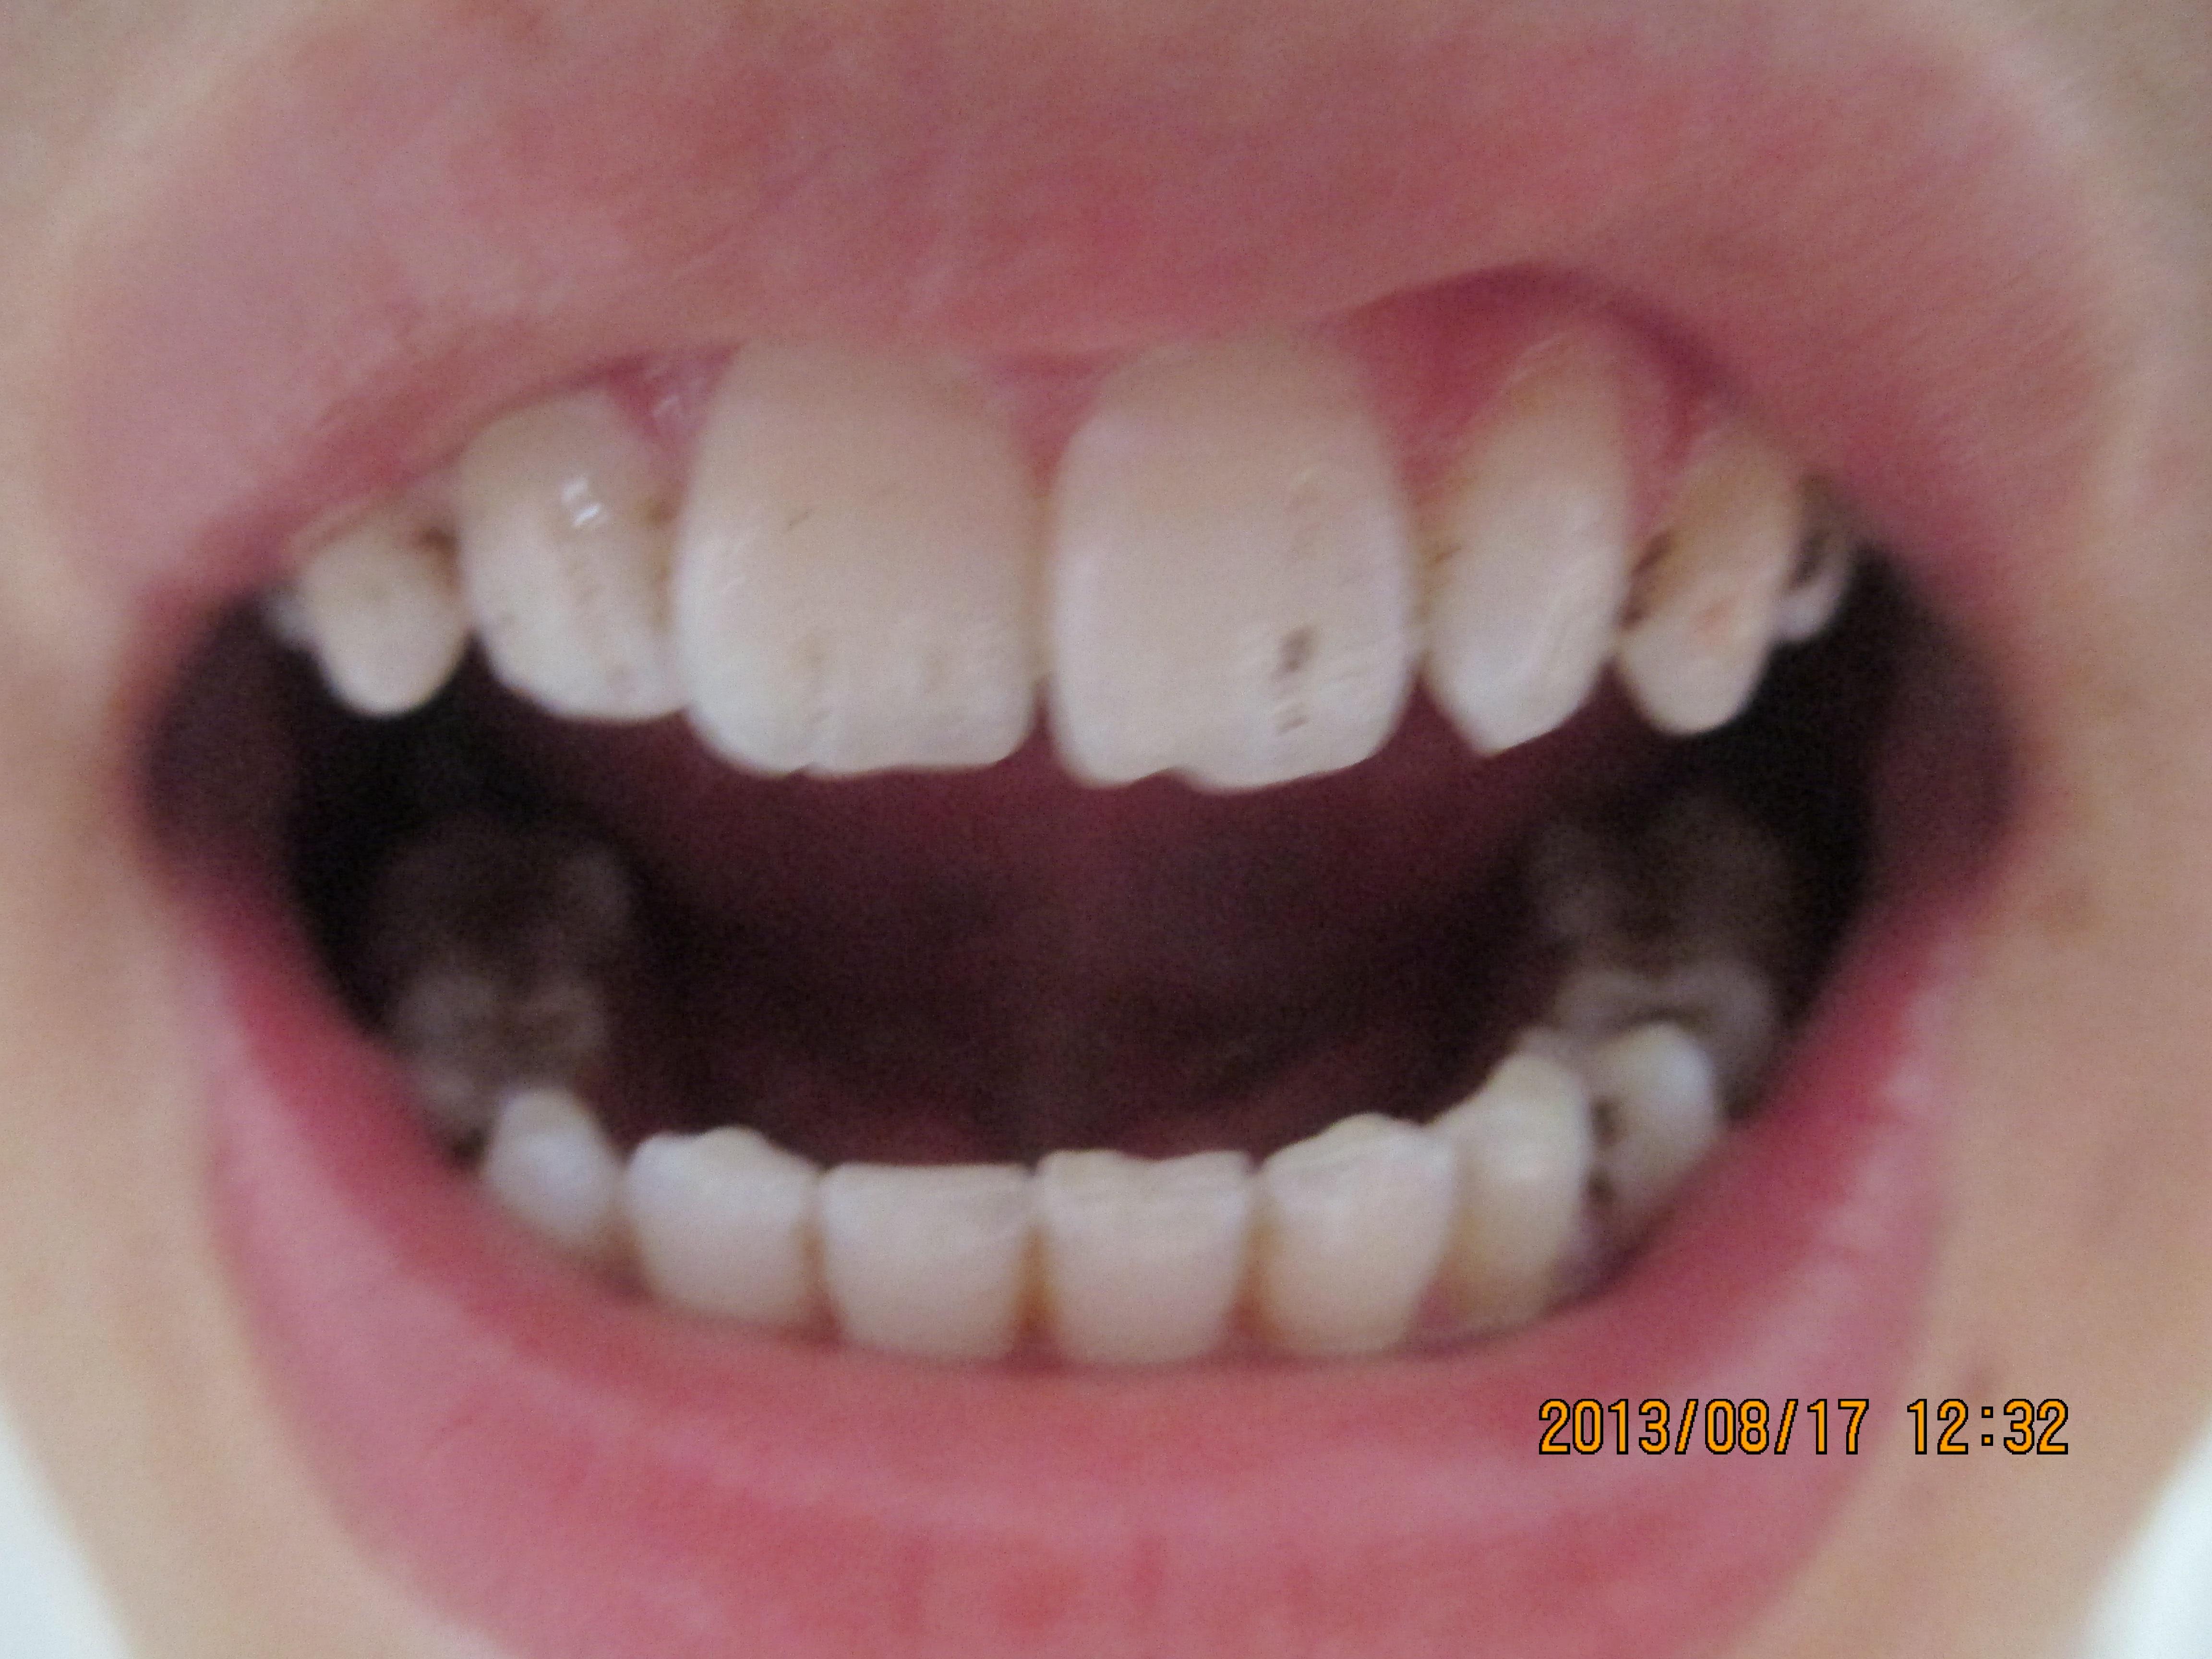 注册x  我老婆牙质从一年前无明显原因开始变黑,现在越来越重,并且我